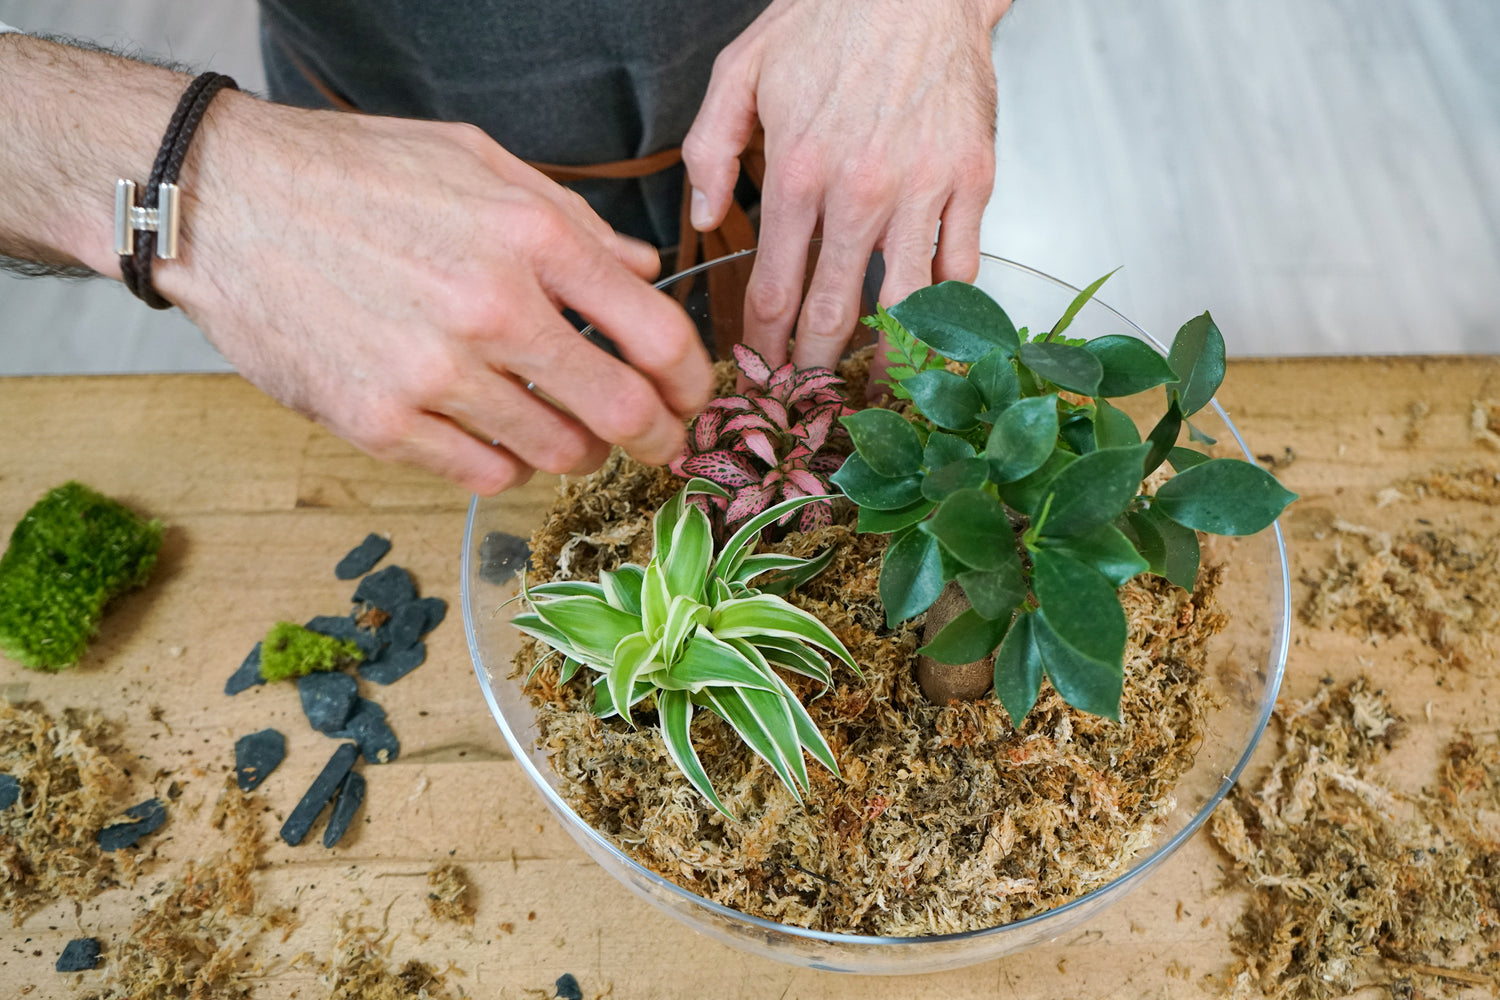 Un atelier terrarium kids-friendly grâce à Boby la plante – Maman Bougeotte